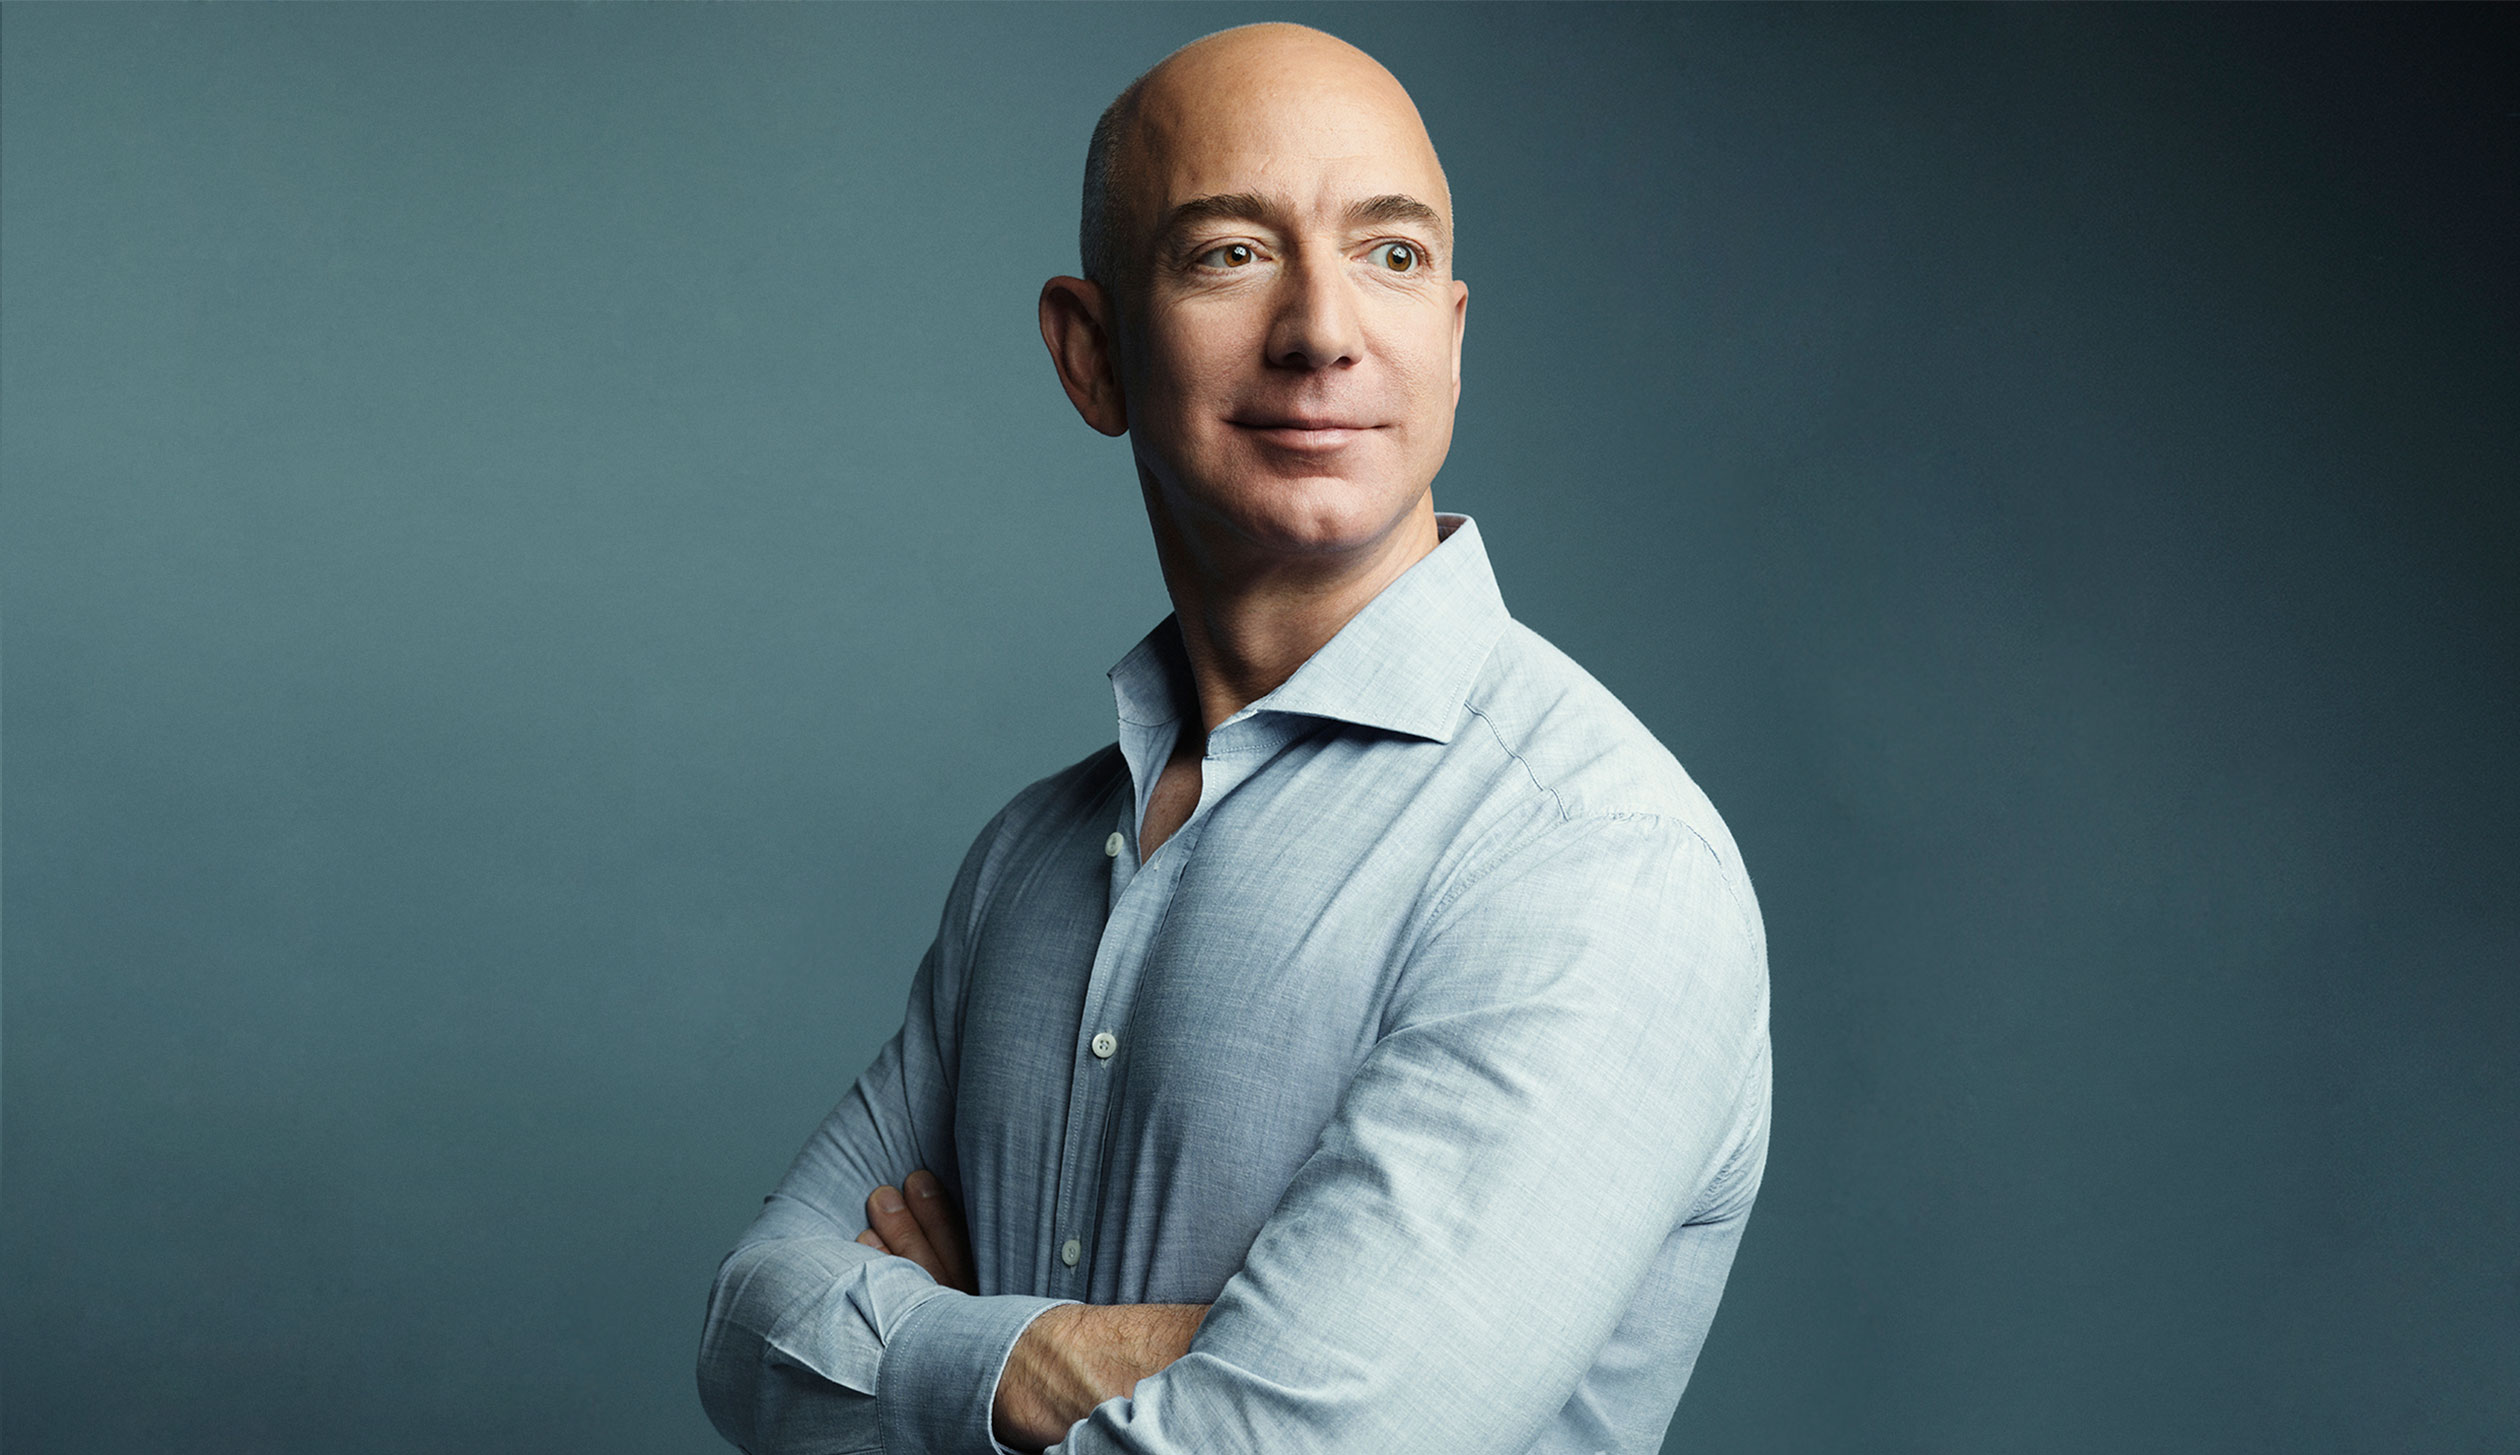 Jeff Bezos Pledges $2 Billion Toward Education and Homelessness